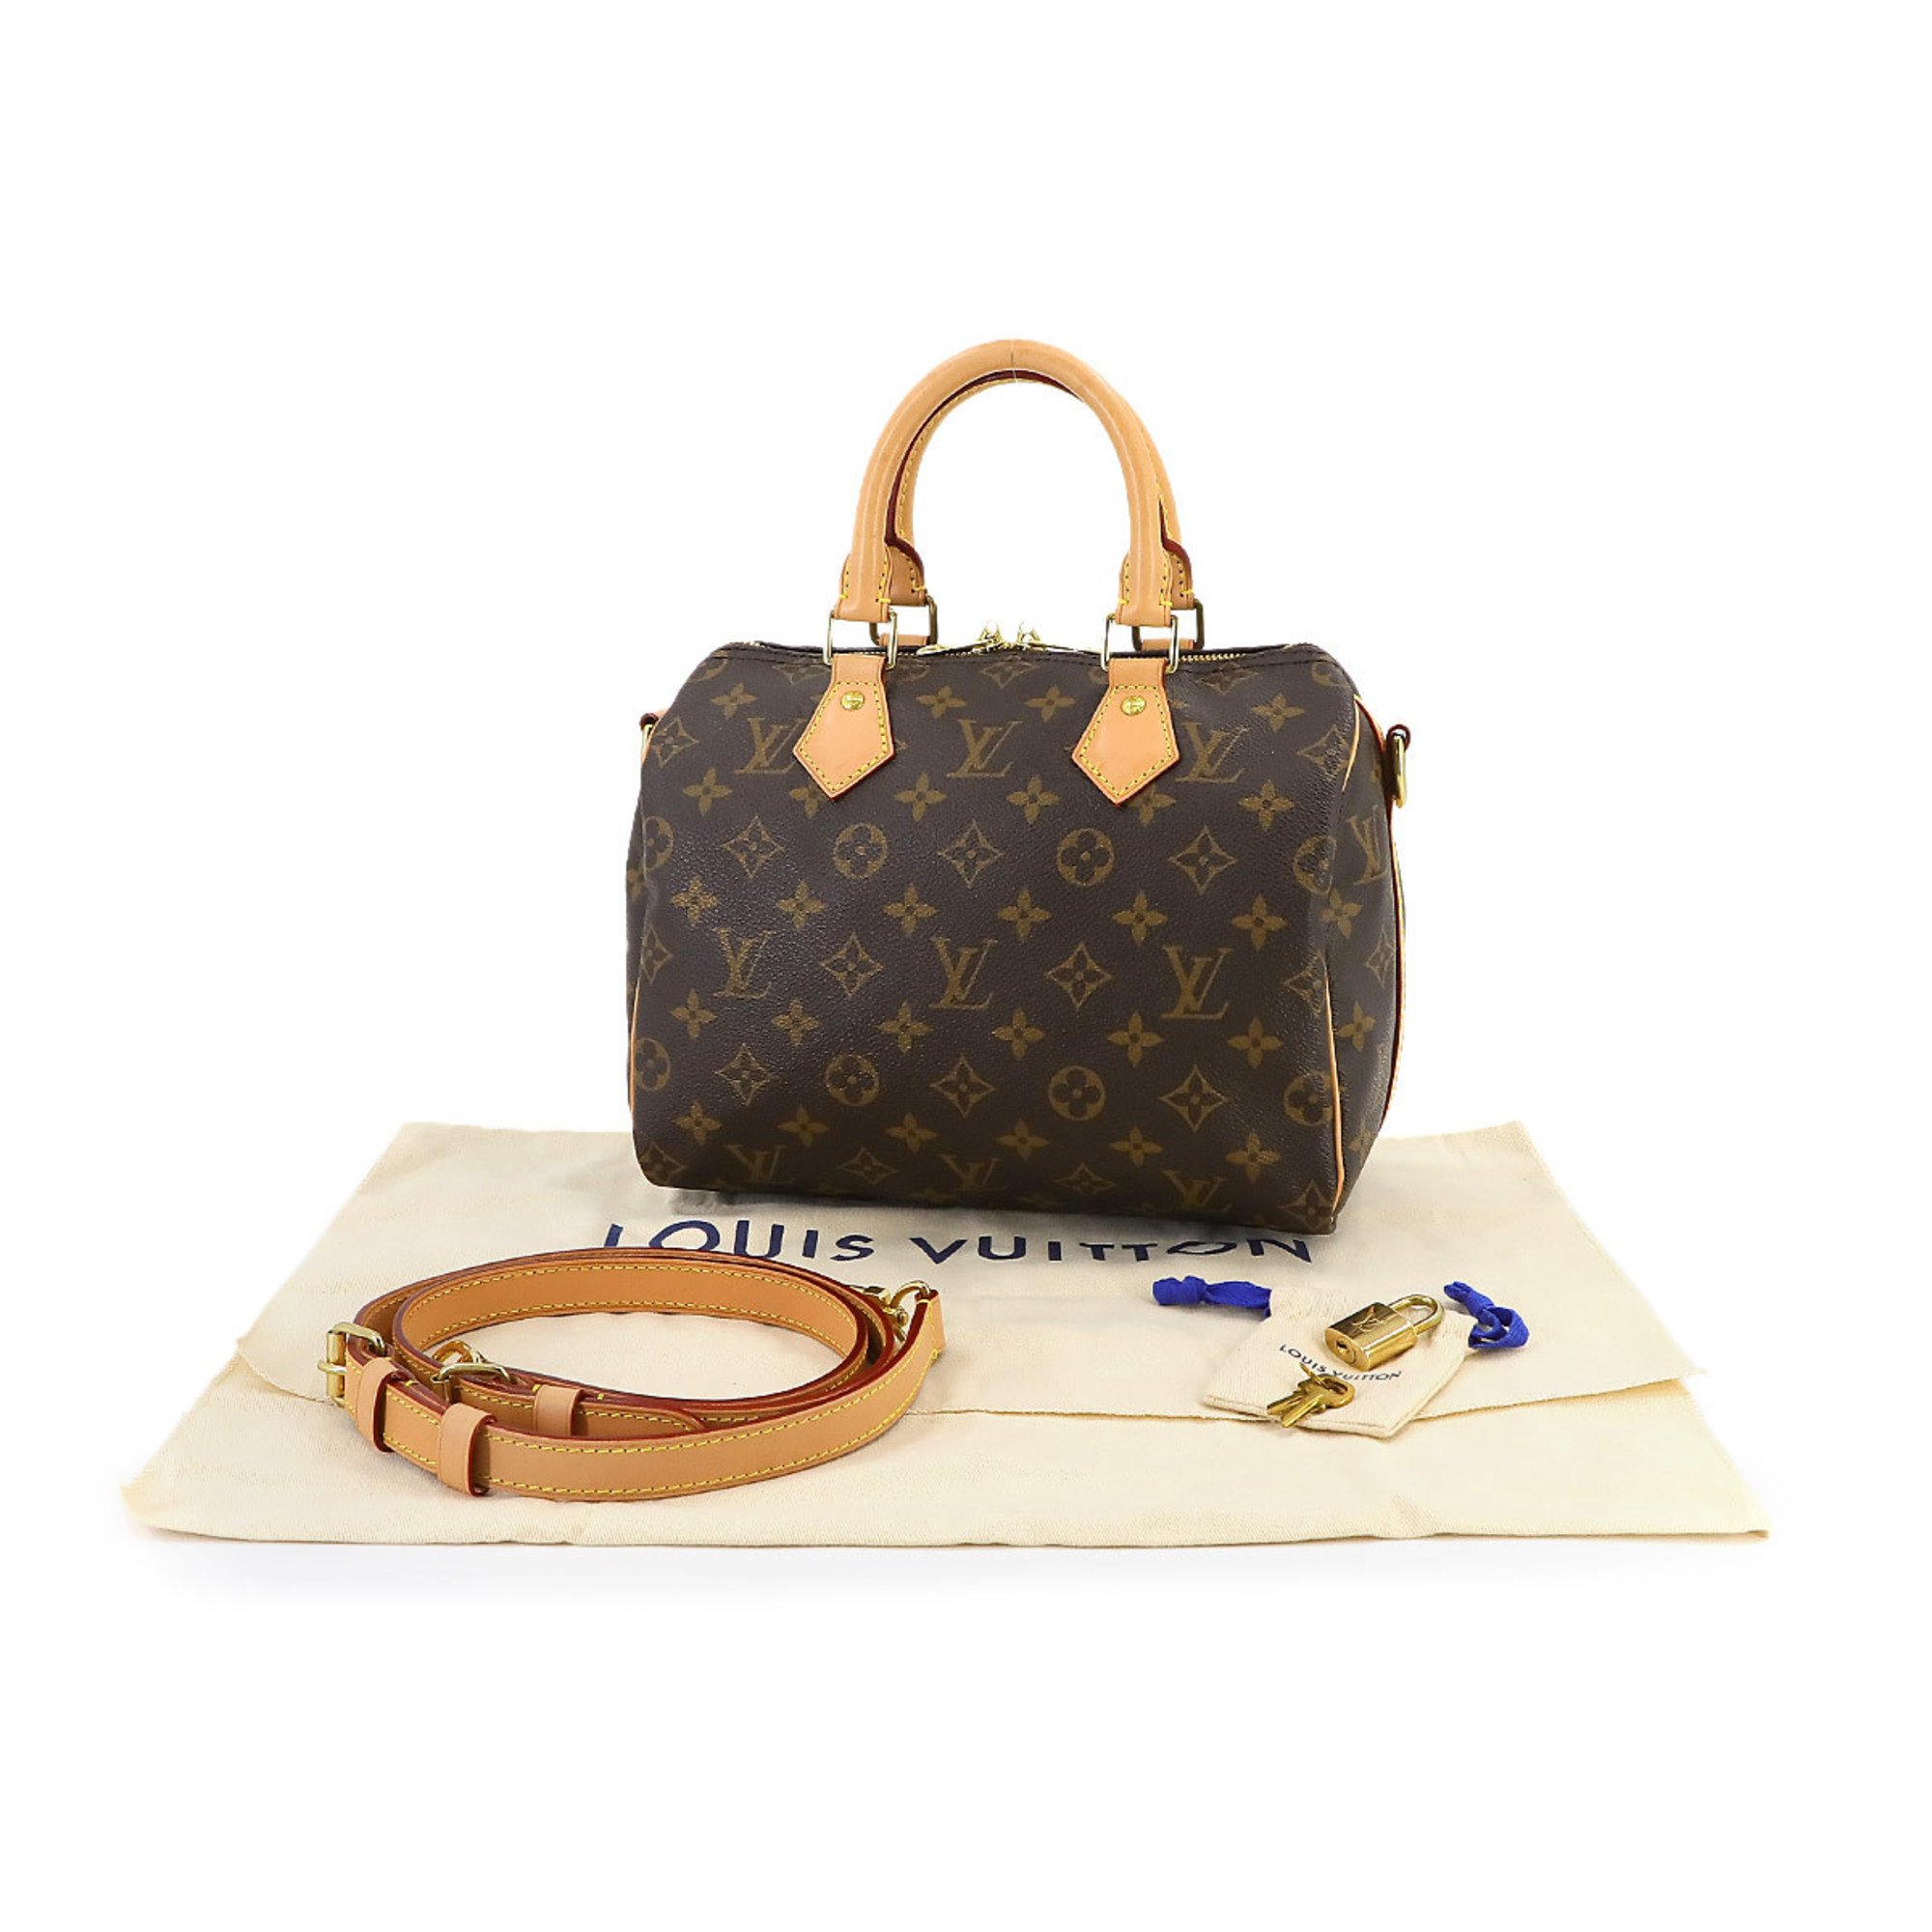 Louis Vuitton Monogram Speedy Bandouliere 25 2way Hand Shoulder Bag Brown M41113 RFID